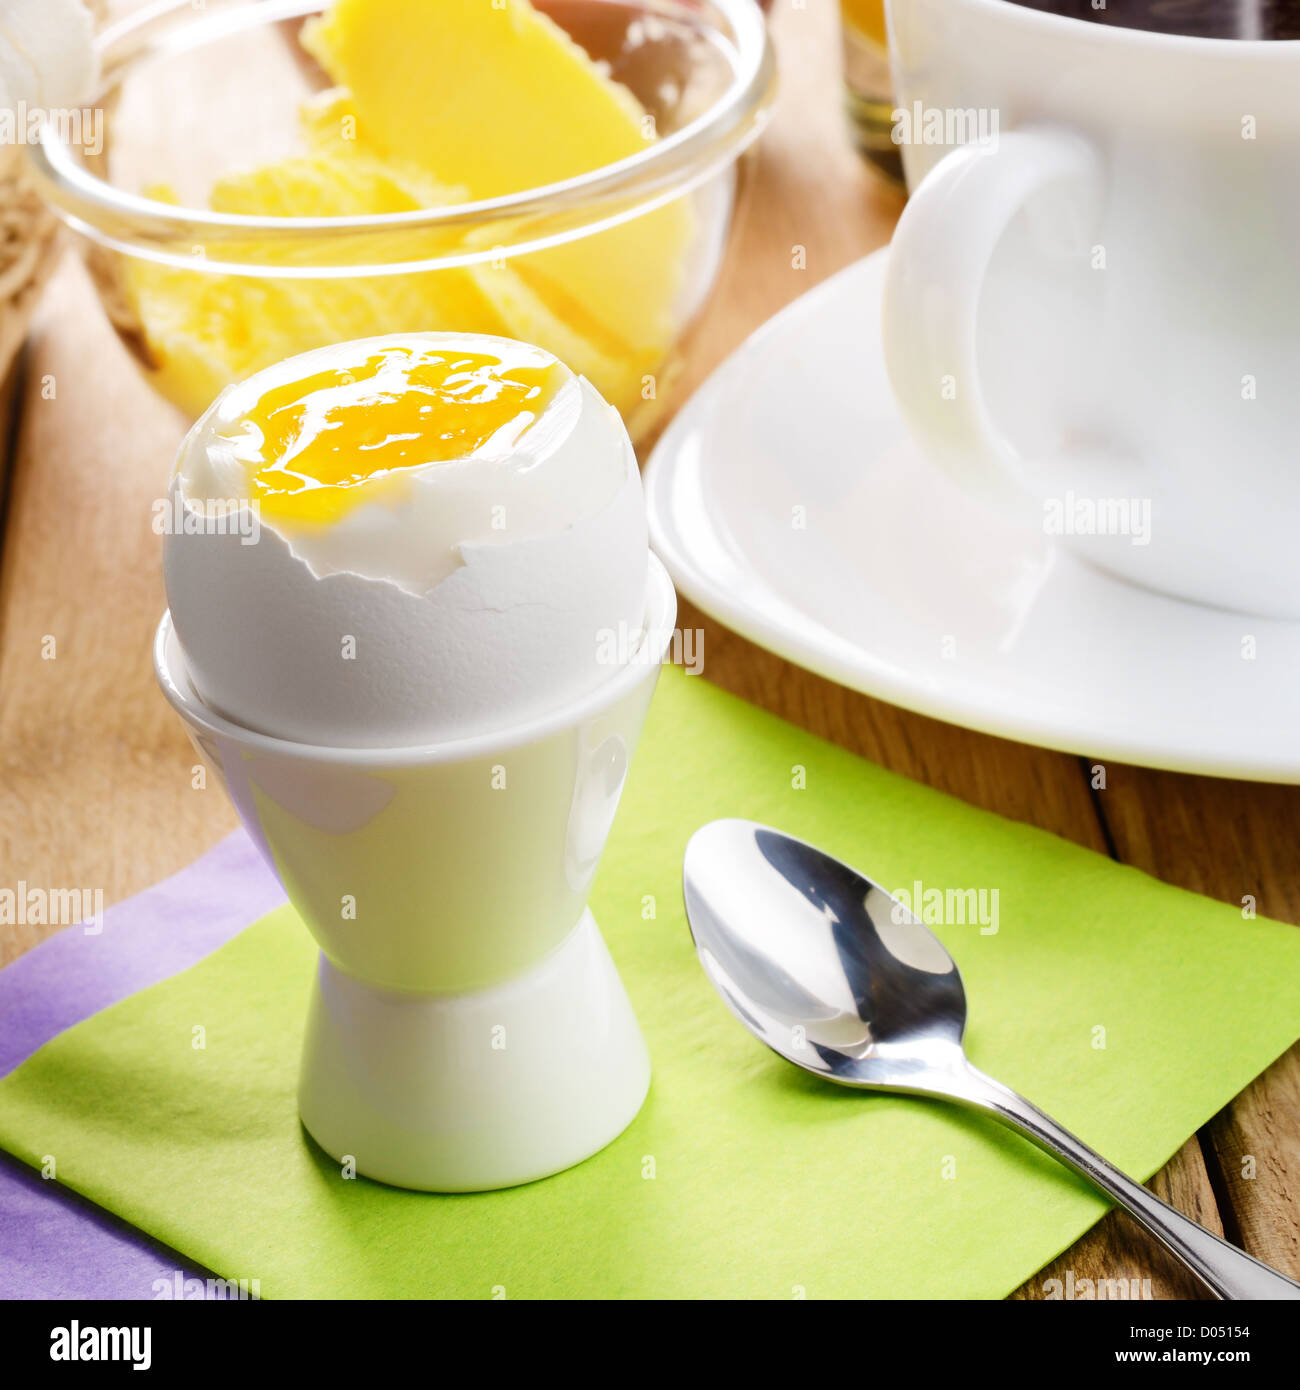 Colazione a base di uova sode, caffè, croissant e burro Foto Stock